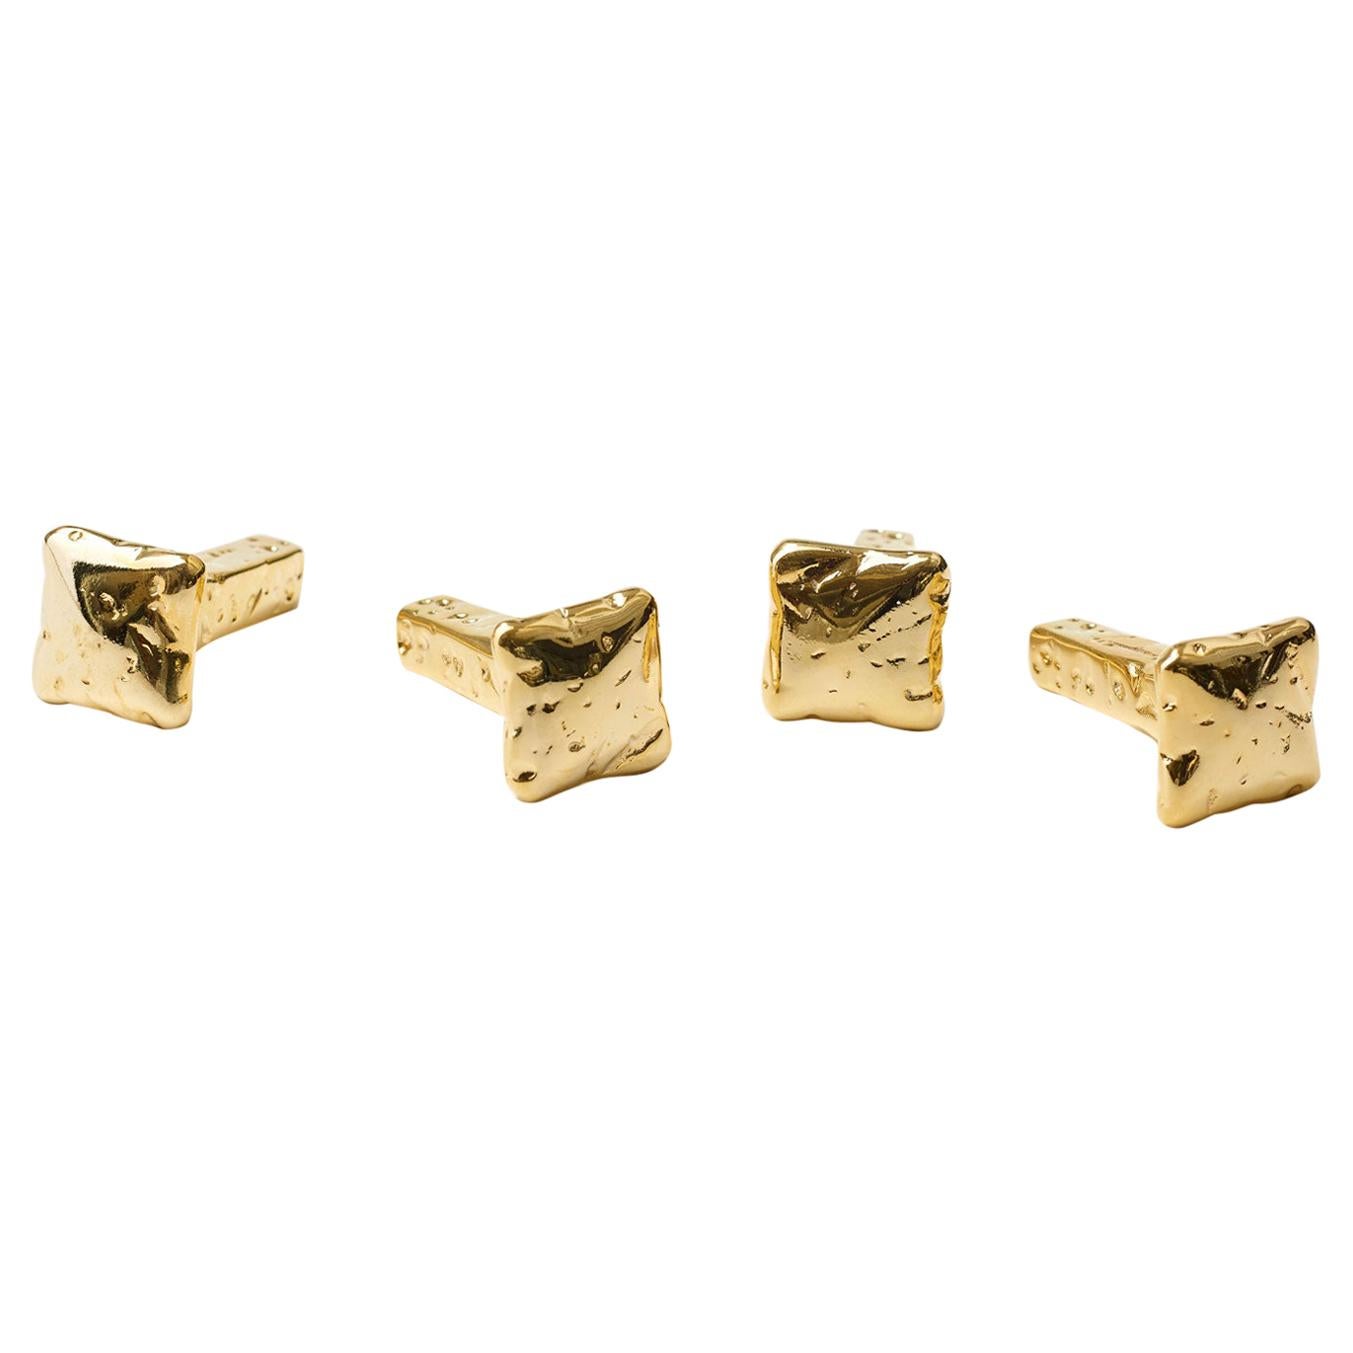 For Sale: Gold (24K Gold) Opinion Ciatti Chiodo Schiaccia Chiodo Set of 12 Clothes Hangers